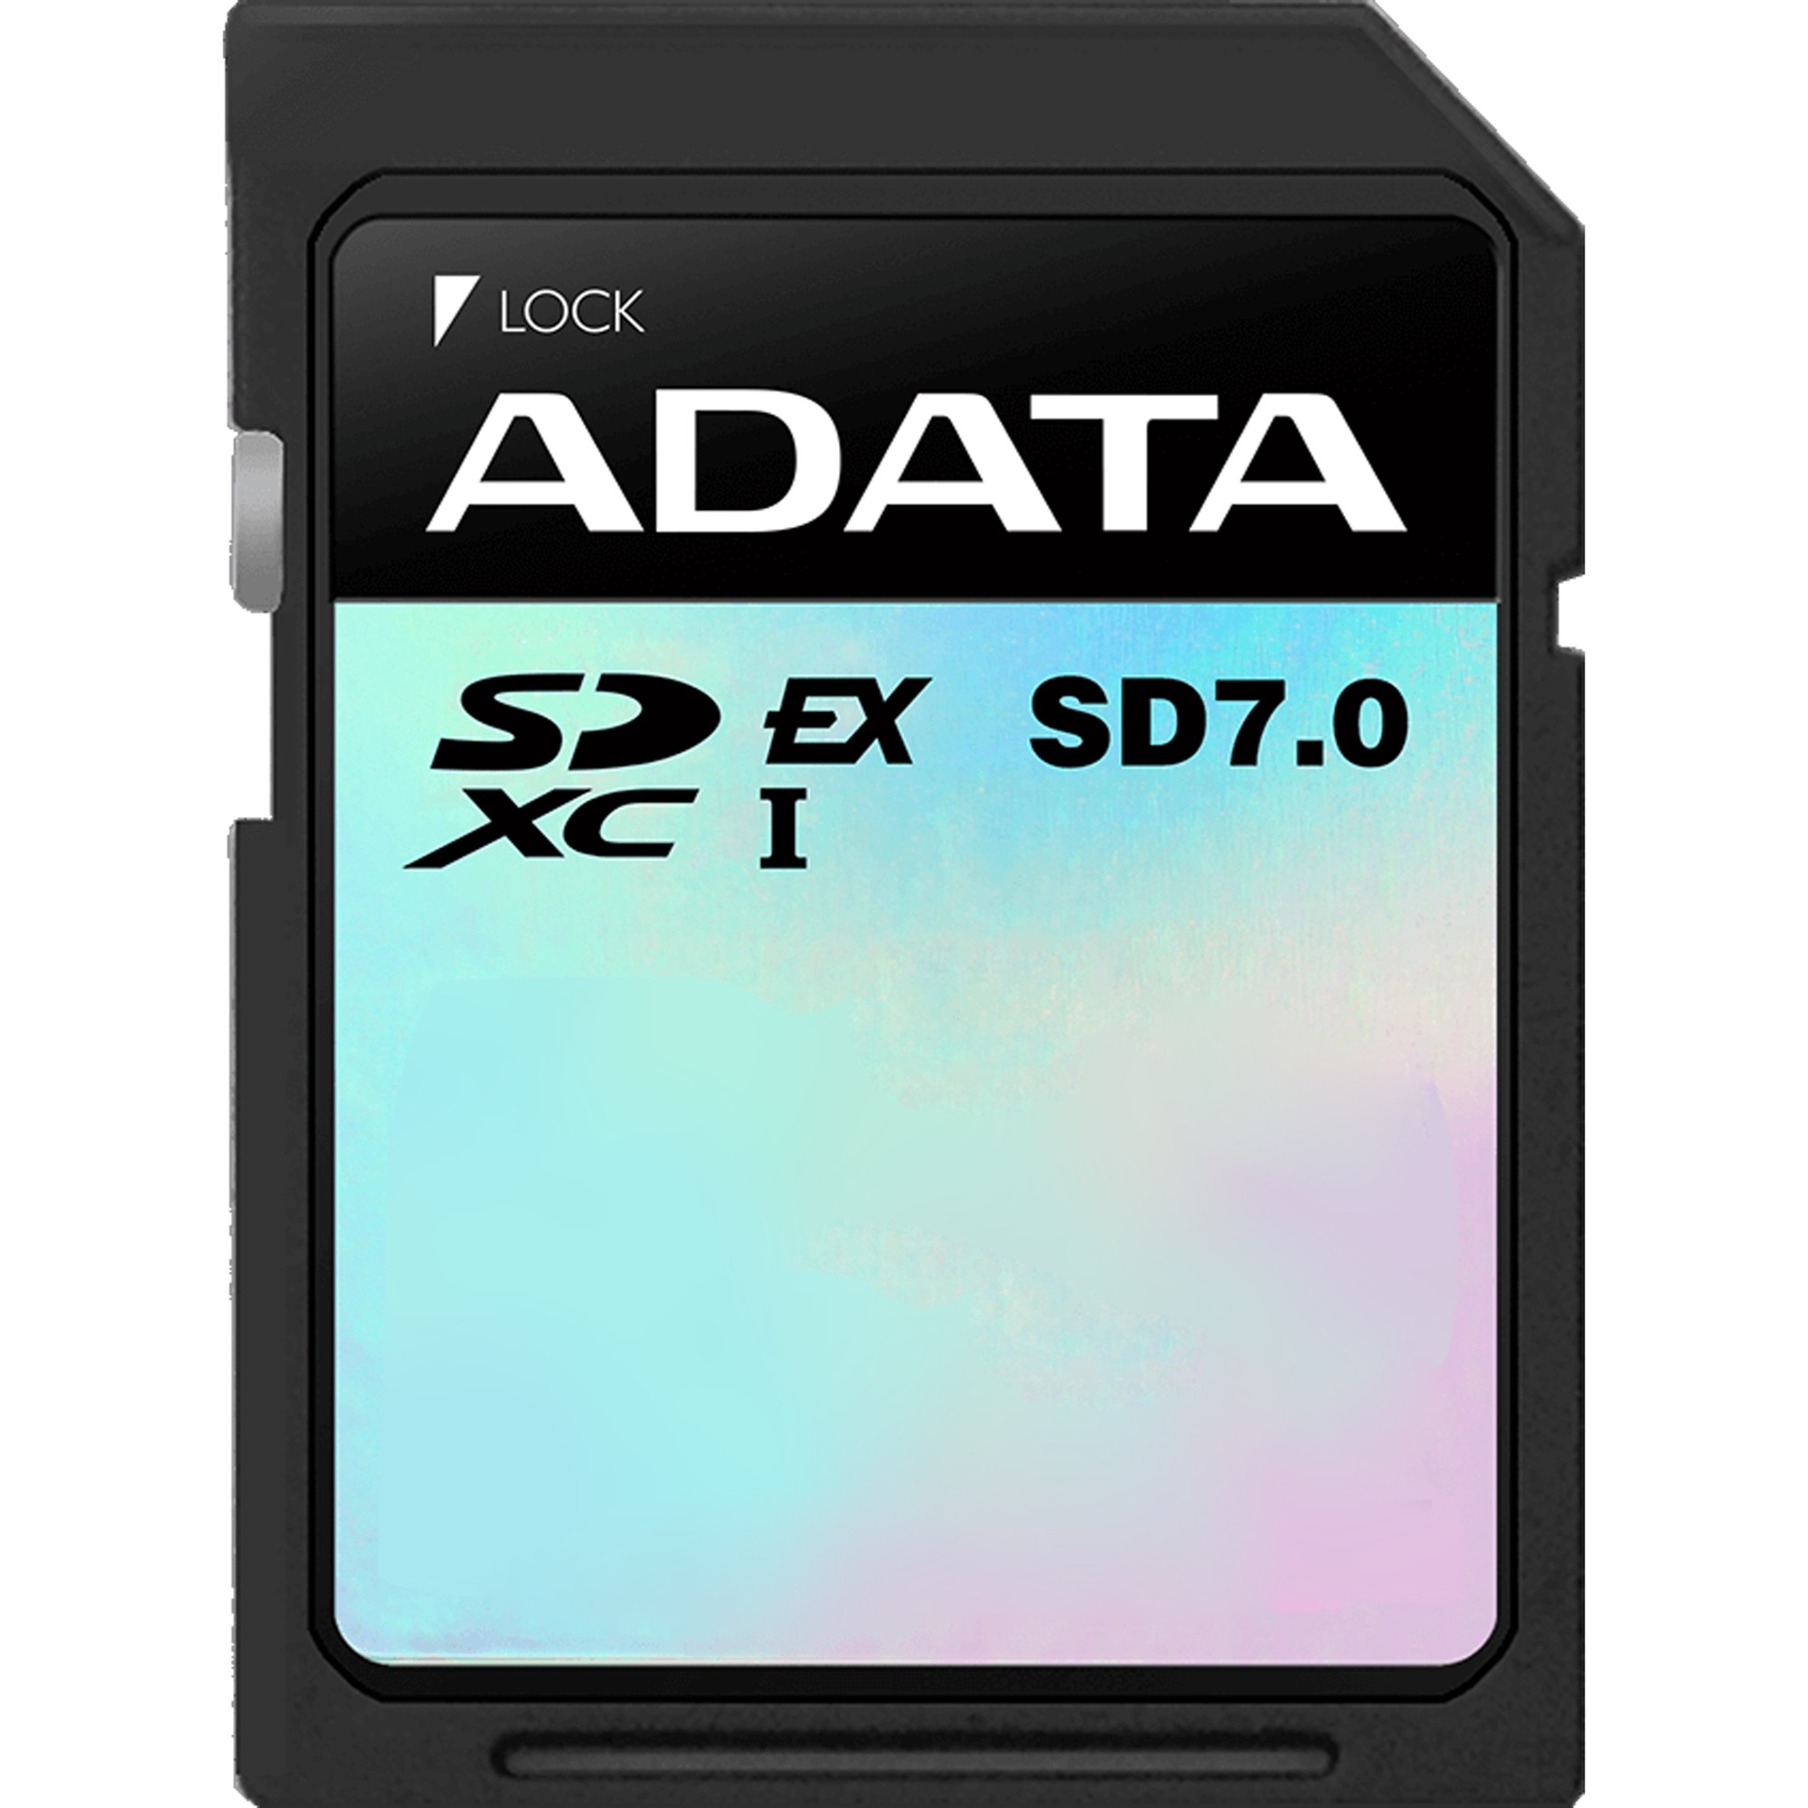 Image of Alternate - Premier Extreme SDXC 256 GB, Speicherkarte online einkaufen bei Alternate